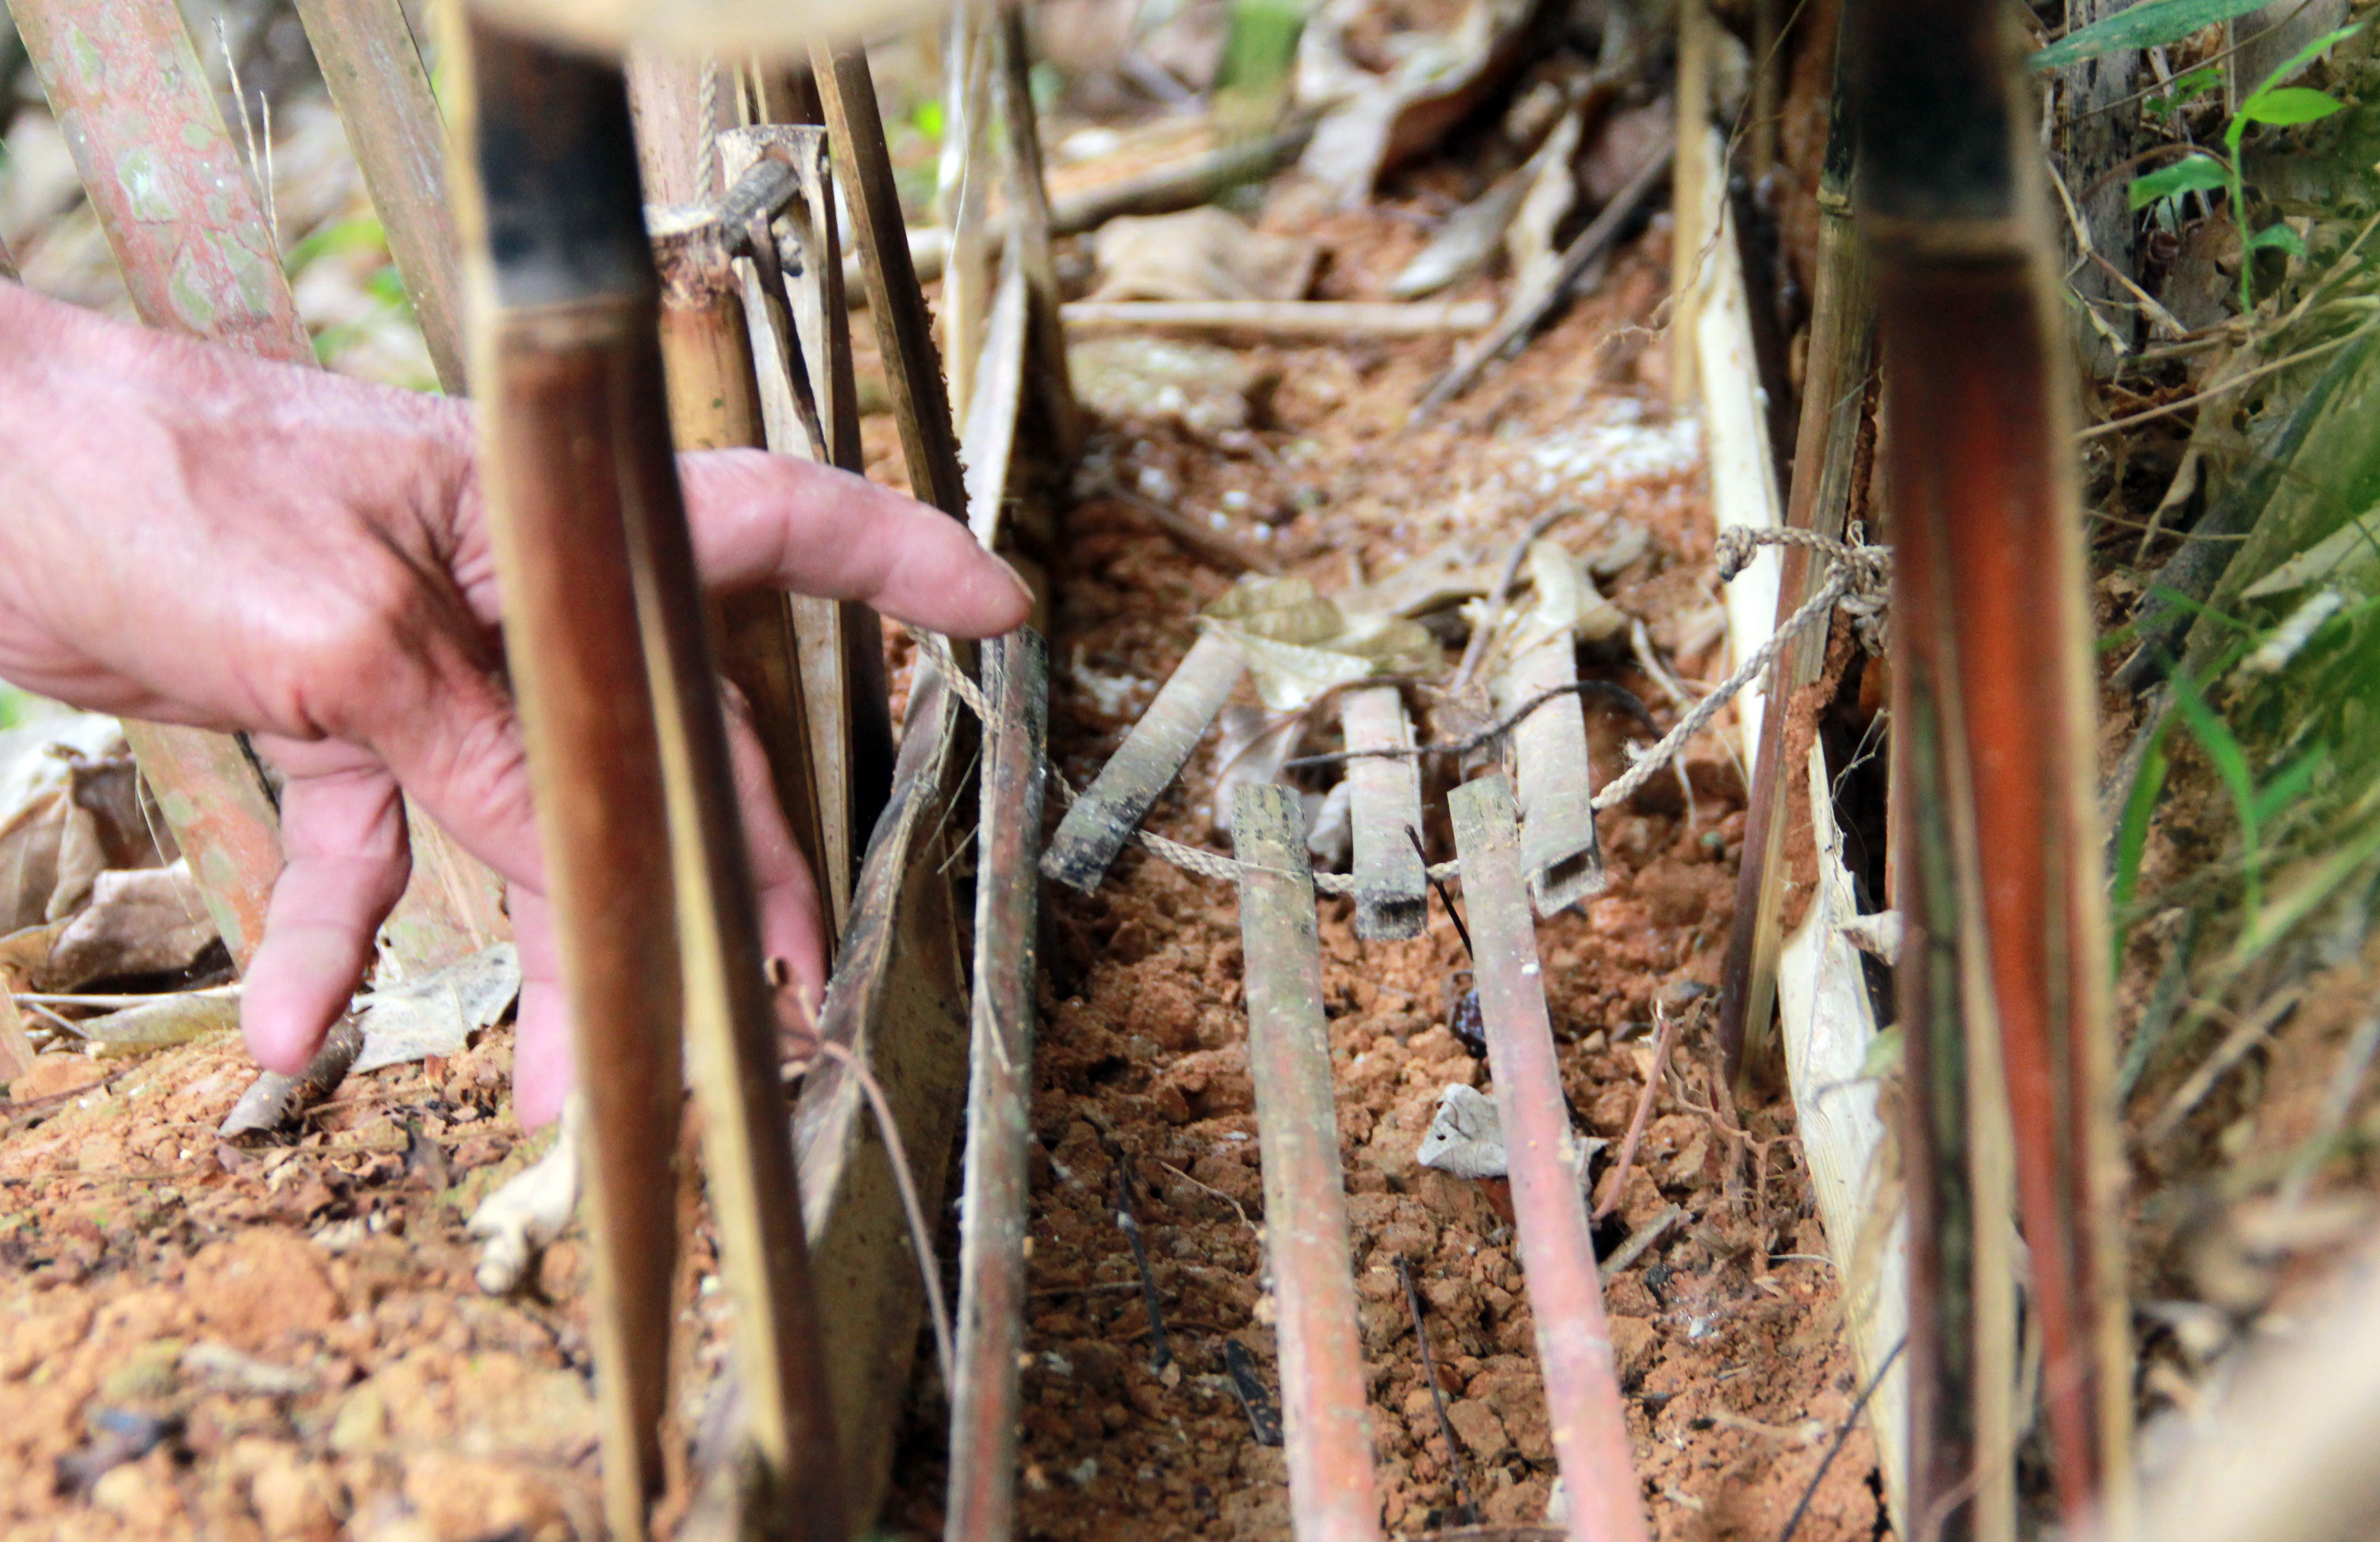 Bẫy đập thường được dựng gần các xà năm, nương rẫy giúp cho người Thái bảo vệ mùa màng và cải thiện bữa ăn chi gia đình.